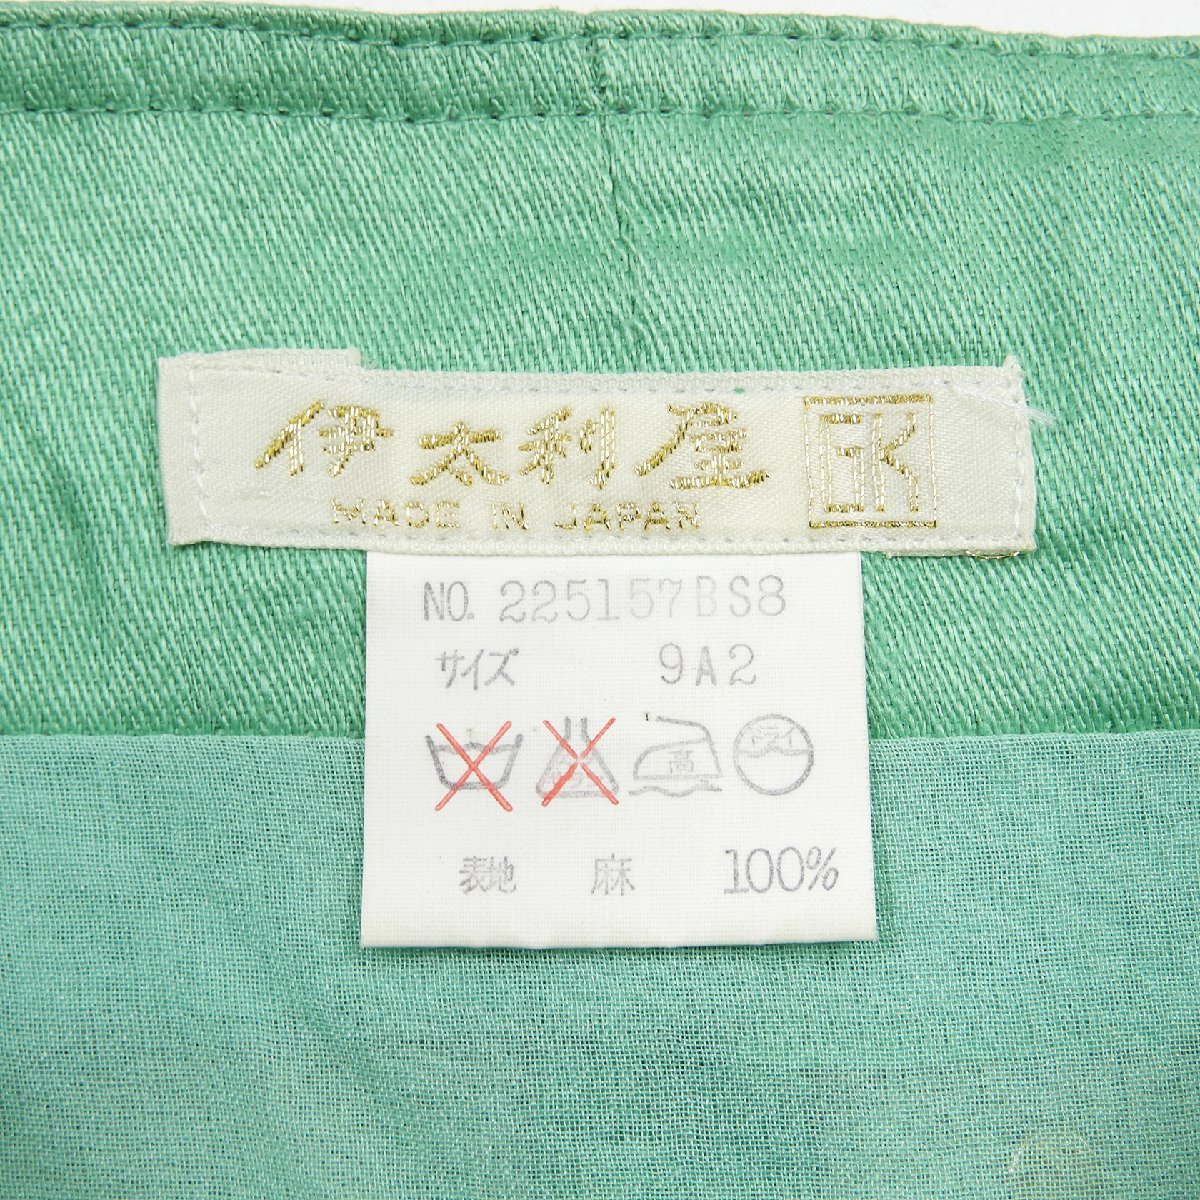 伊太利屋 リネン スカート グリーン size 9A2 #17106 きれいめ ラグジュアリーの画像3